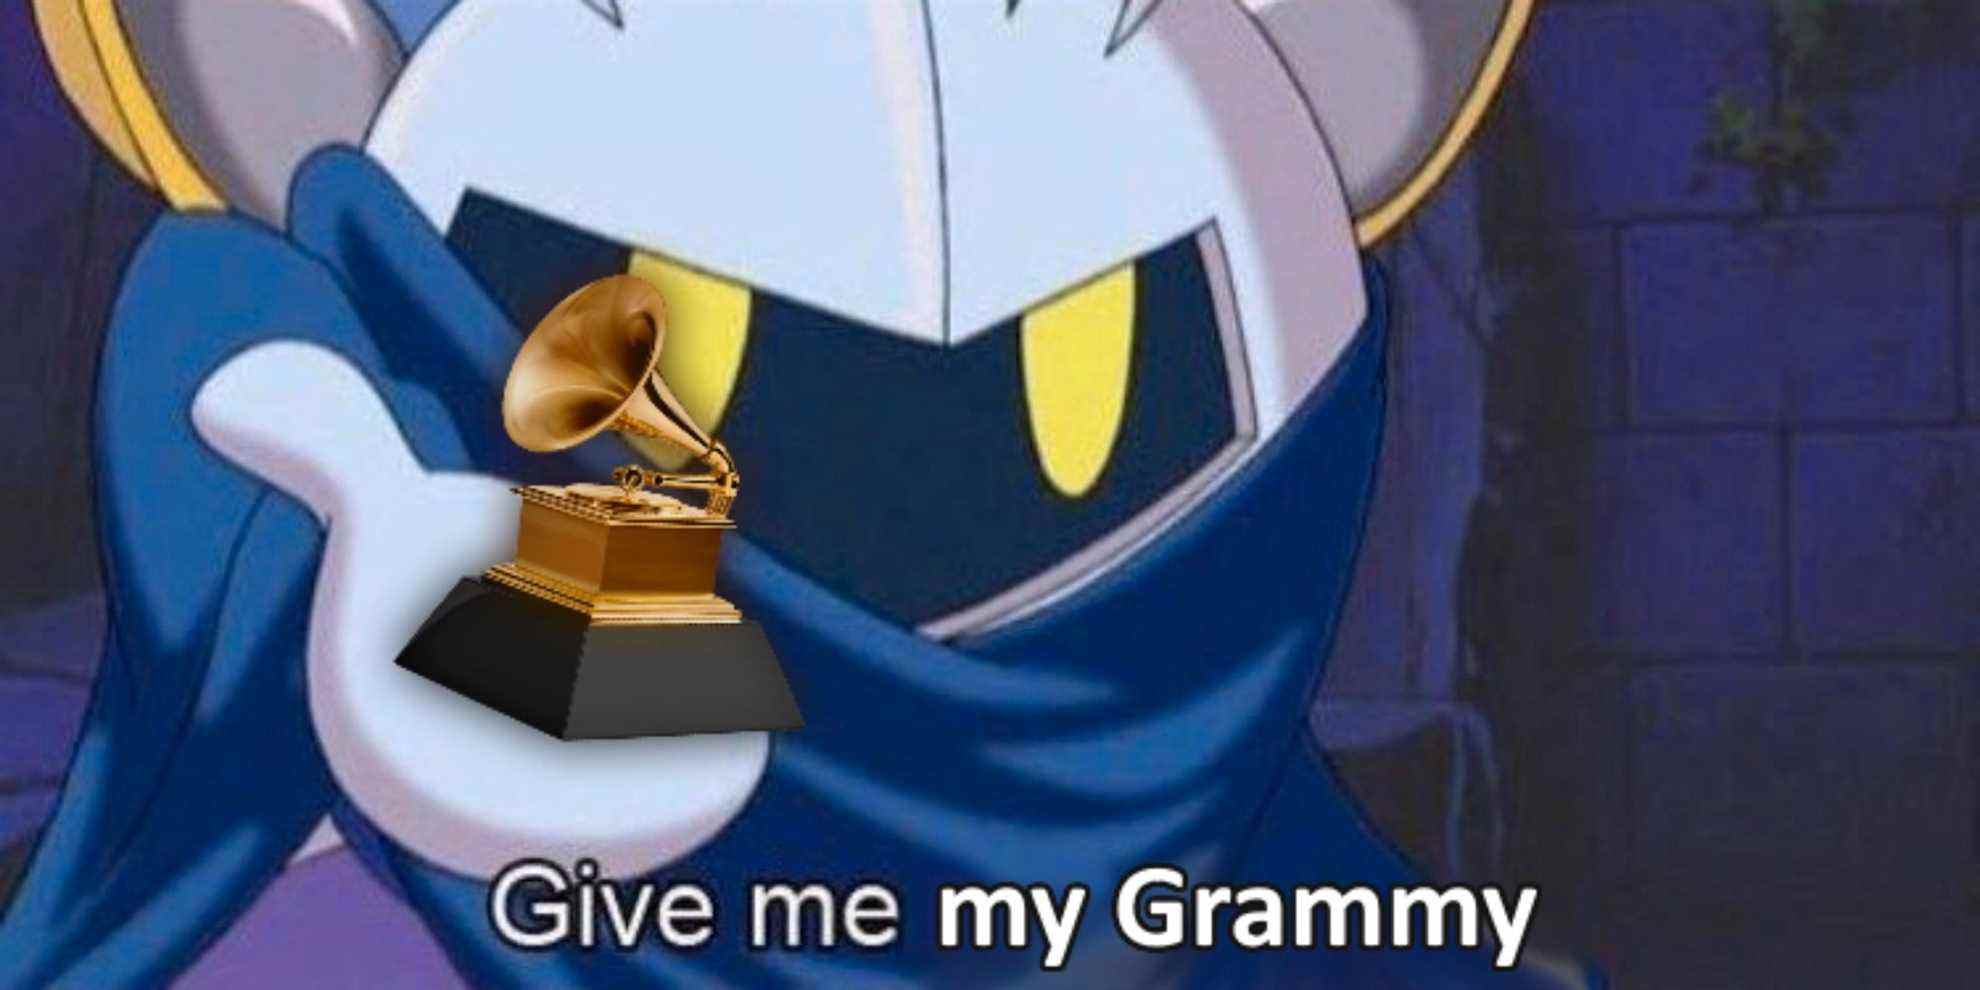 Meta Knight tient un Grammy dans sa paume droite.  La légende se lit comme suit : 